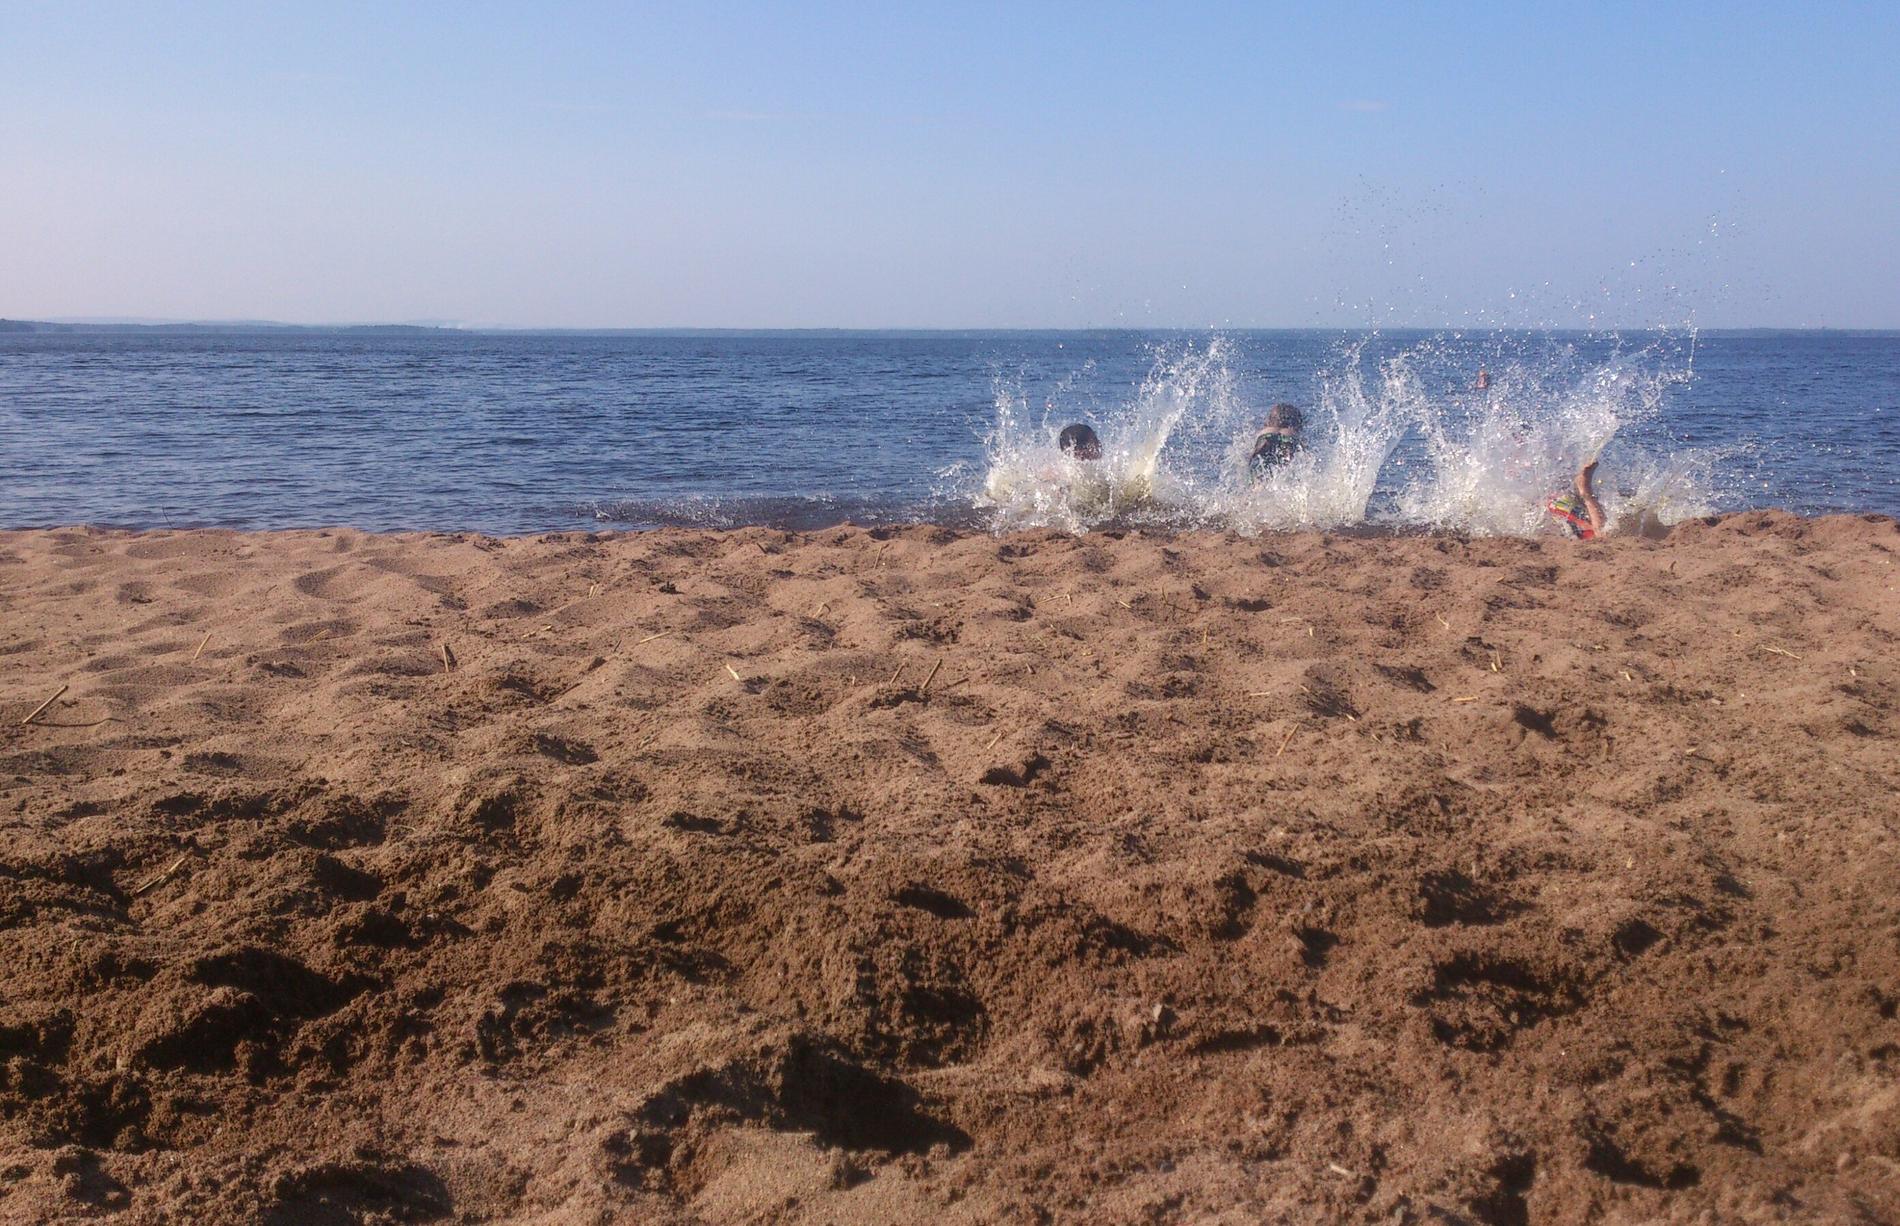 ädret inbjöd till bad vid Storsjöns strand Lund i Årsunda. Härlig start på sommaren